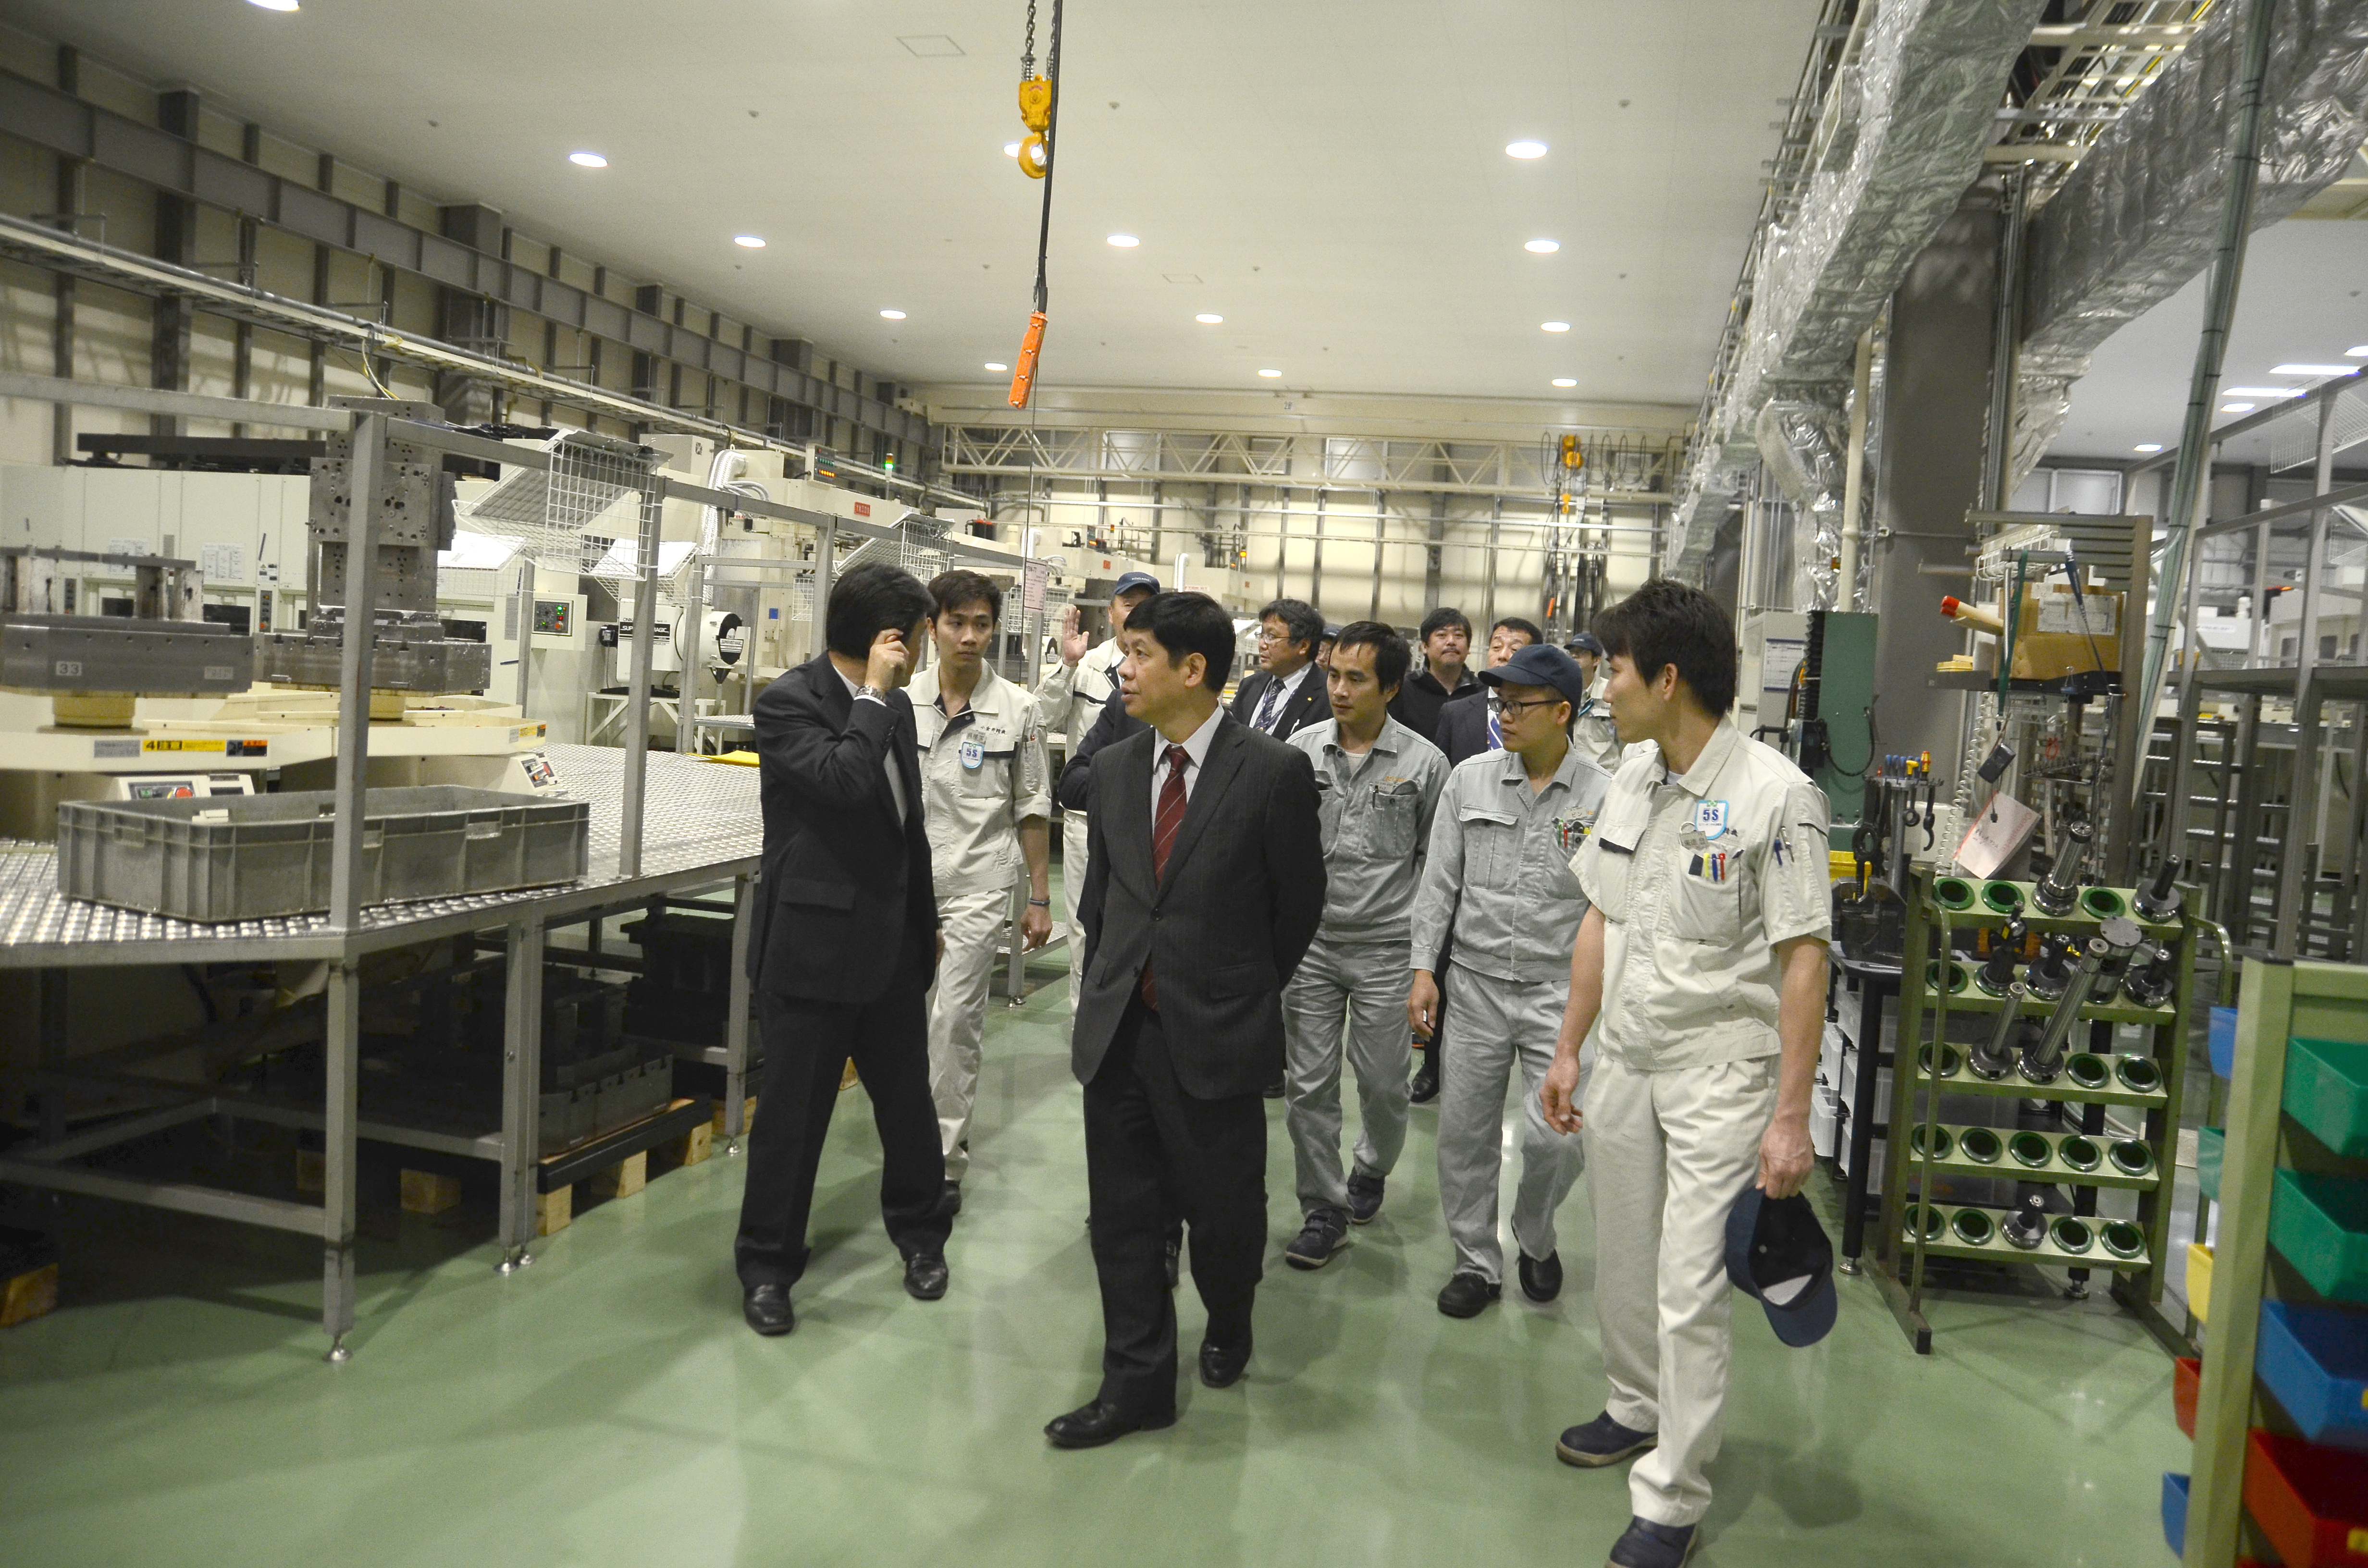 Hình ảnh bên trong nhà máy Koganei Seiki - nơi tuyển dụng nhiều lao động Việt Nam chất lượng cao - trong chuyến thăm của Đại sứ Việt Nam ở Nhật Bản Nguyễn Quốc Cường. (Ảnh: Thành Hữu/Vietnam+)